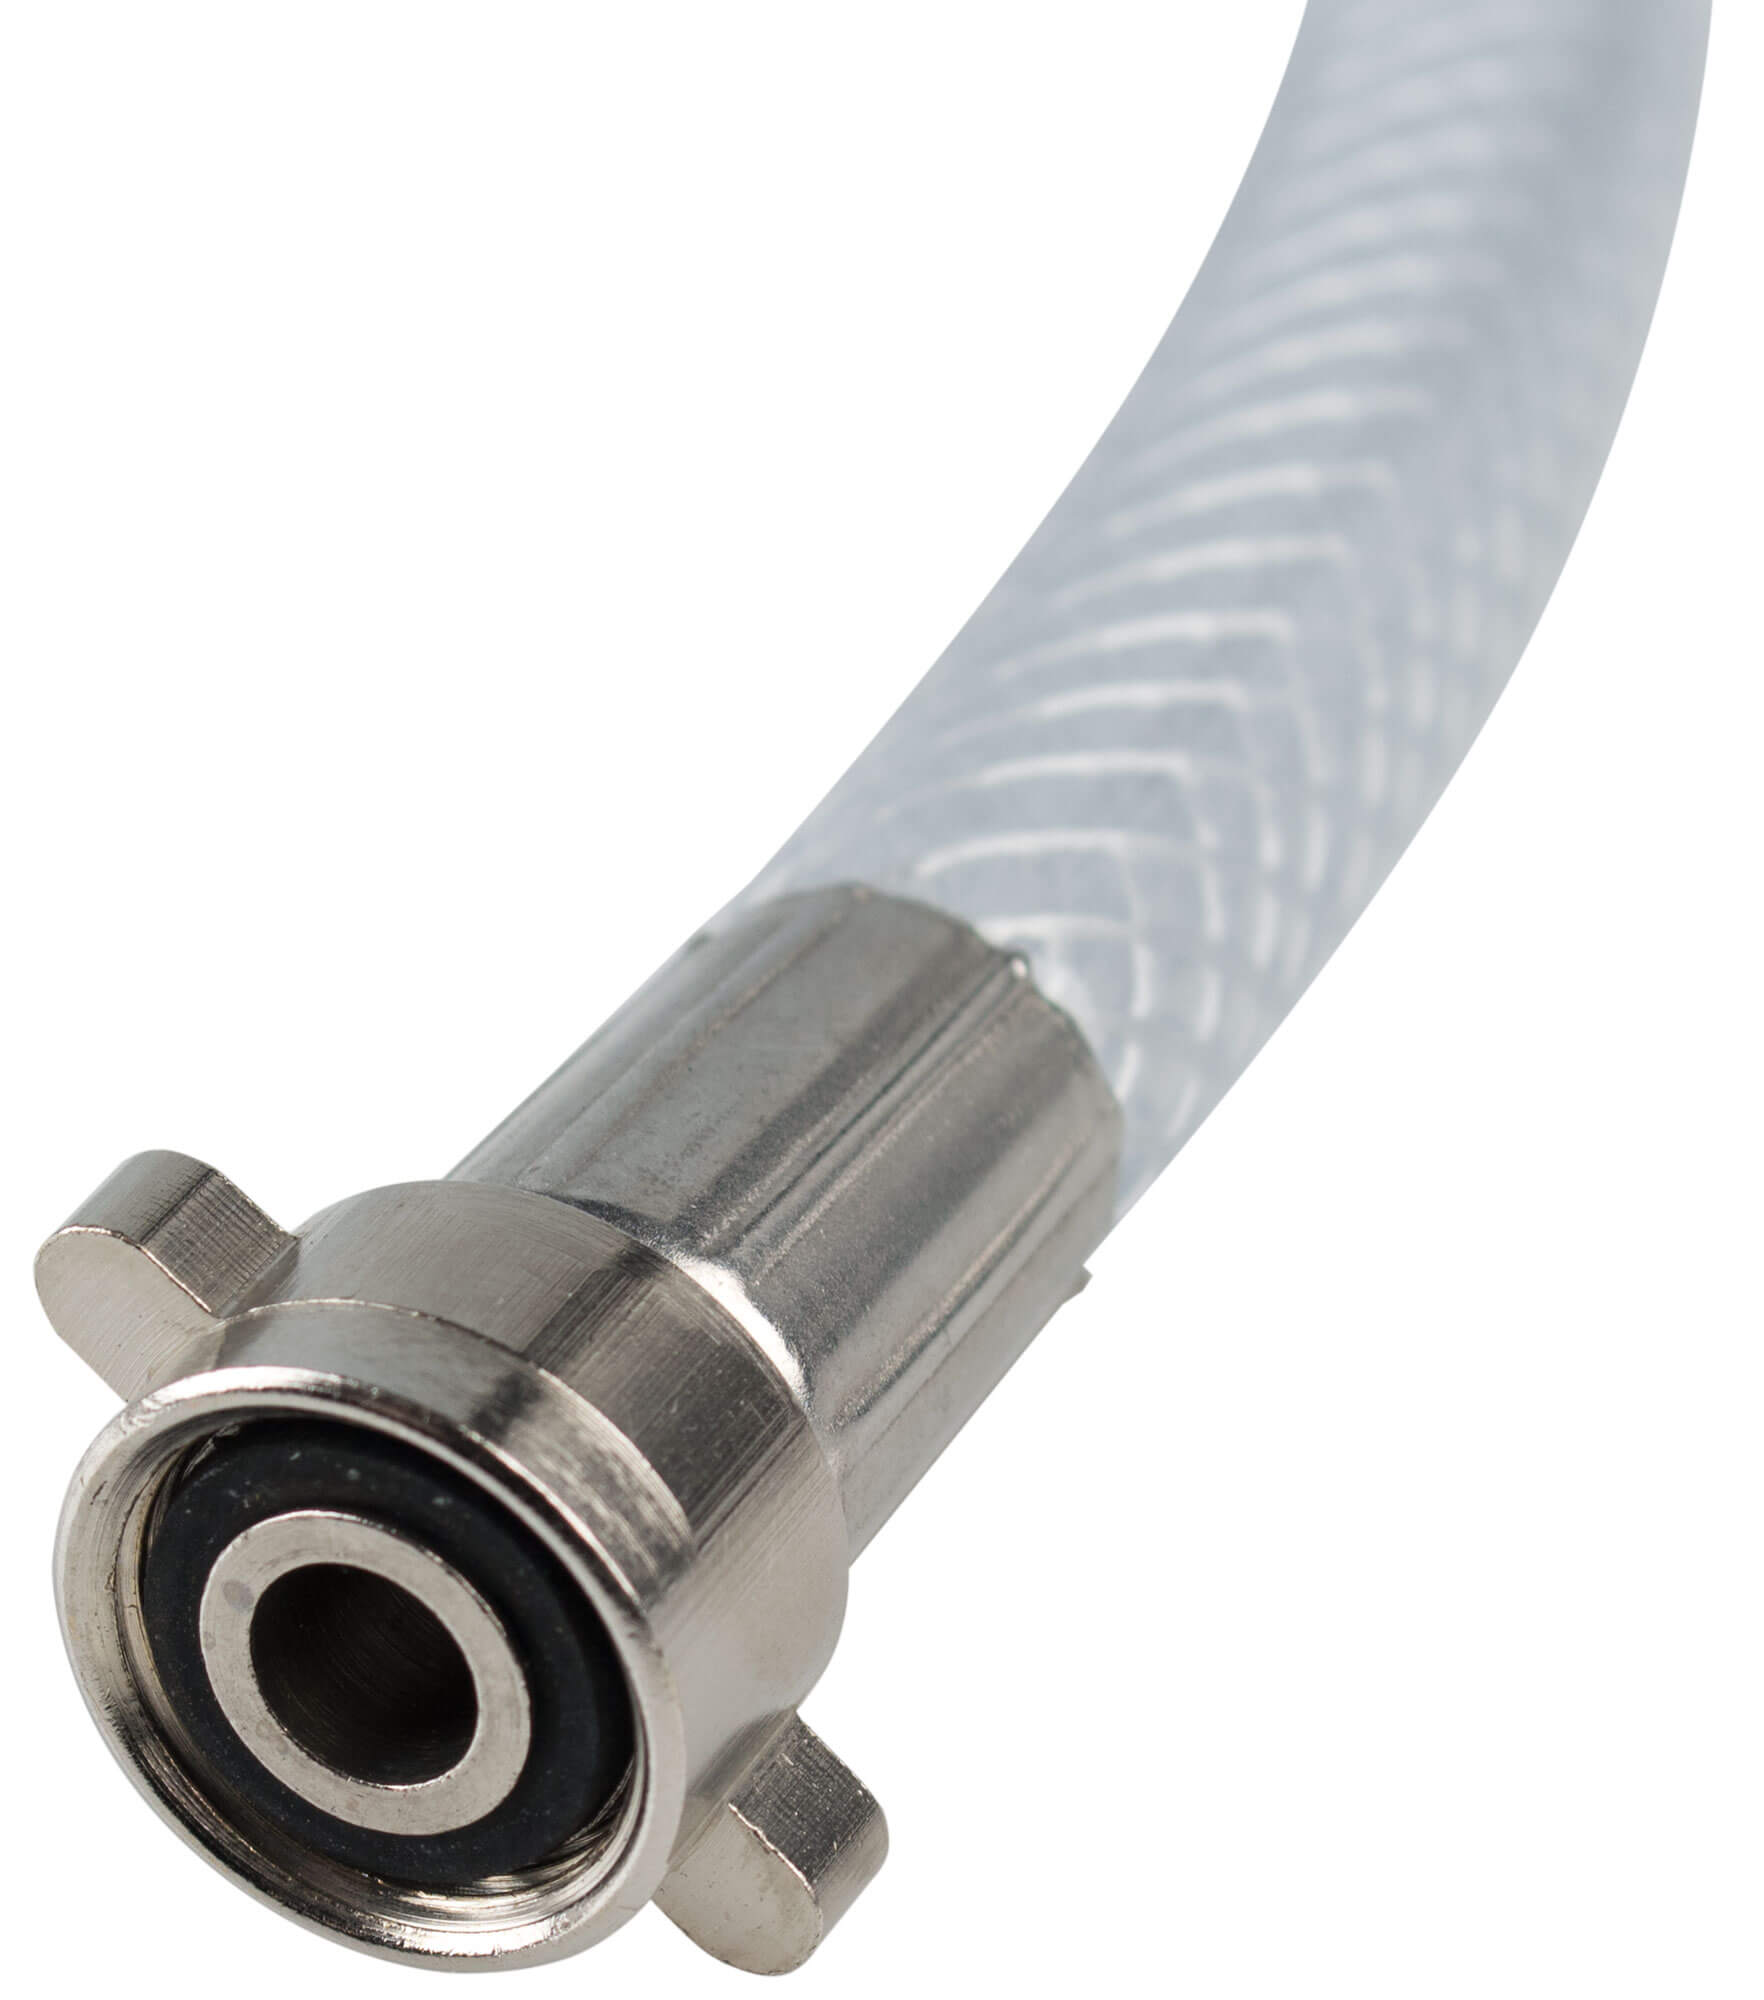 Spülboy Classic connection hose - 3/8"